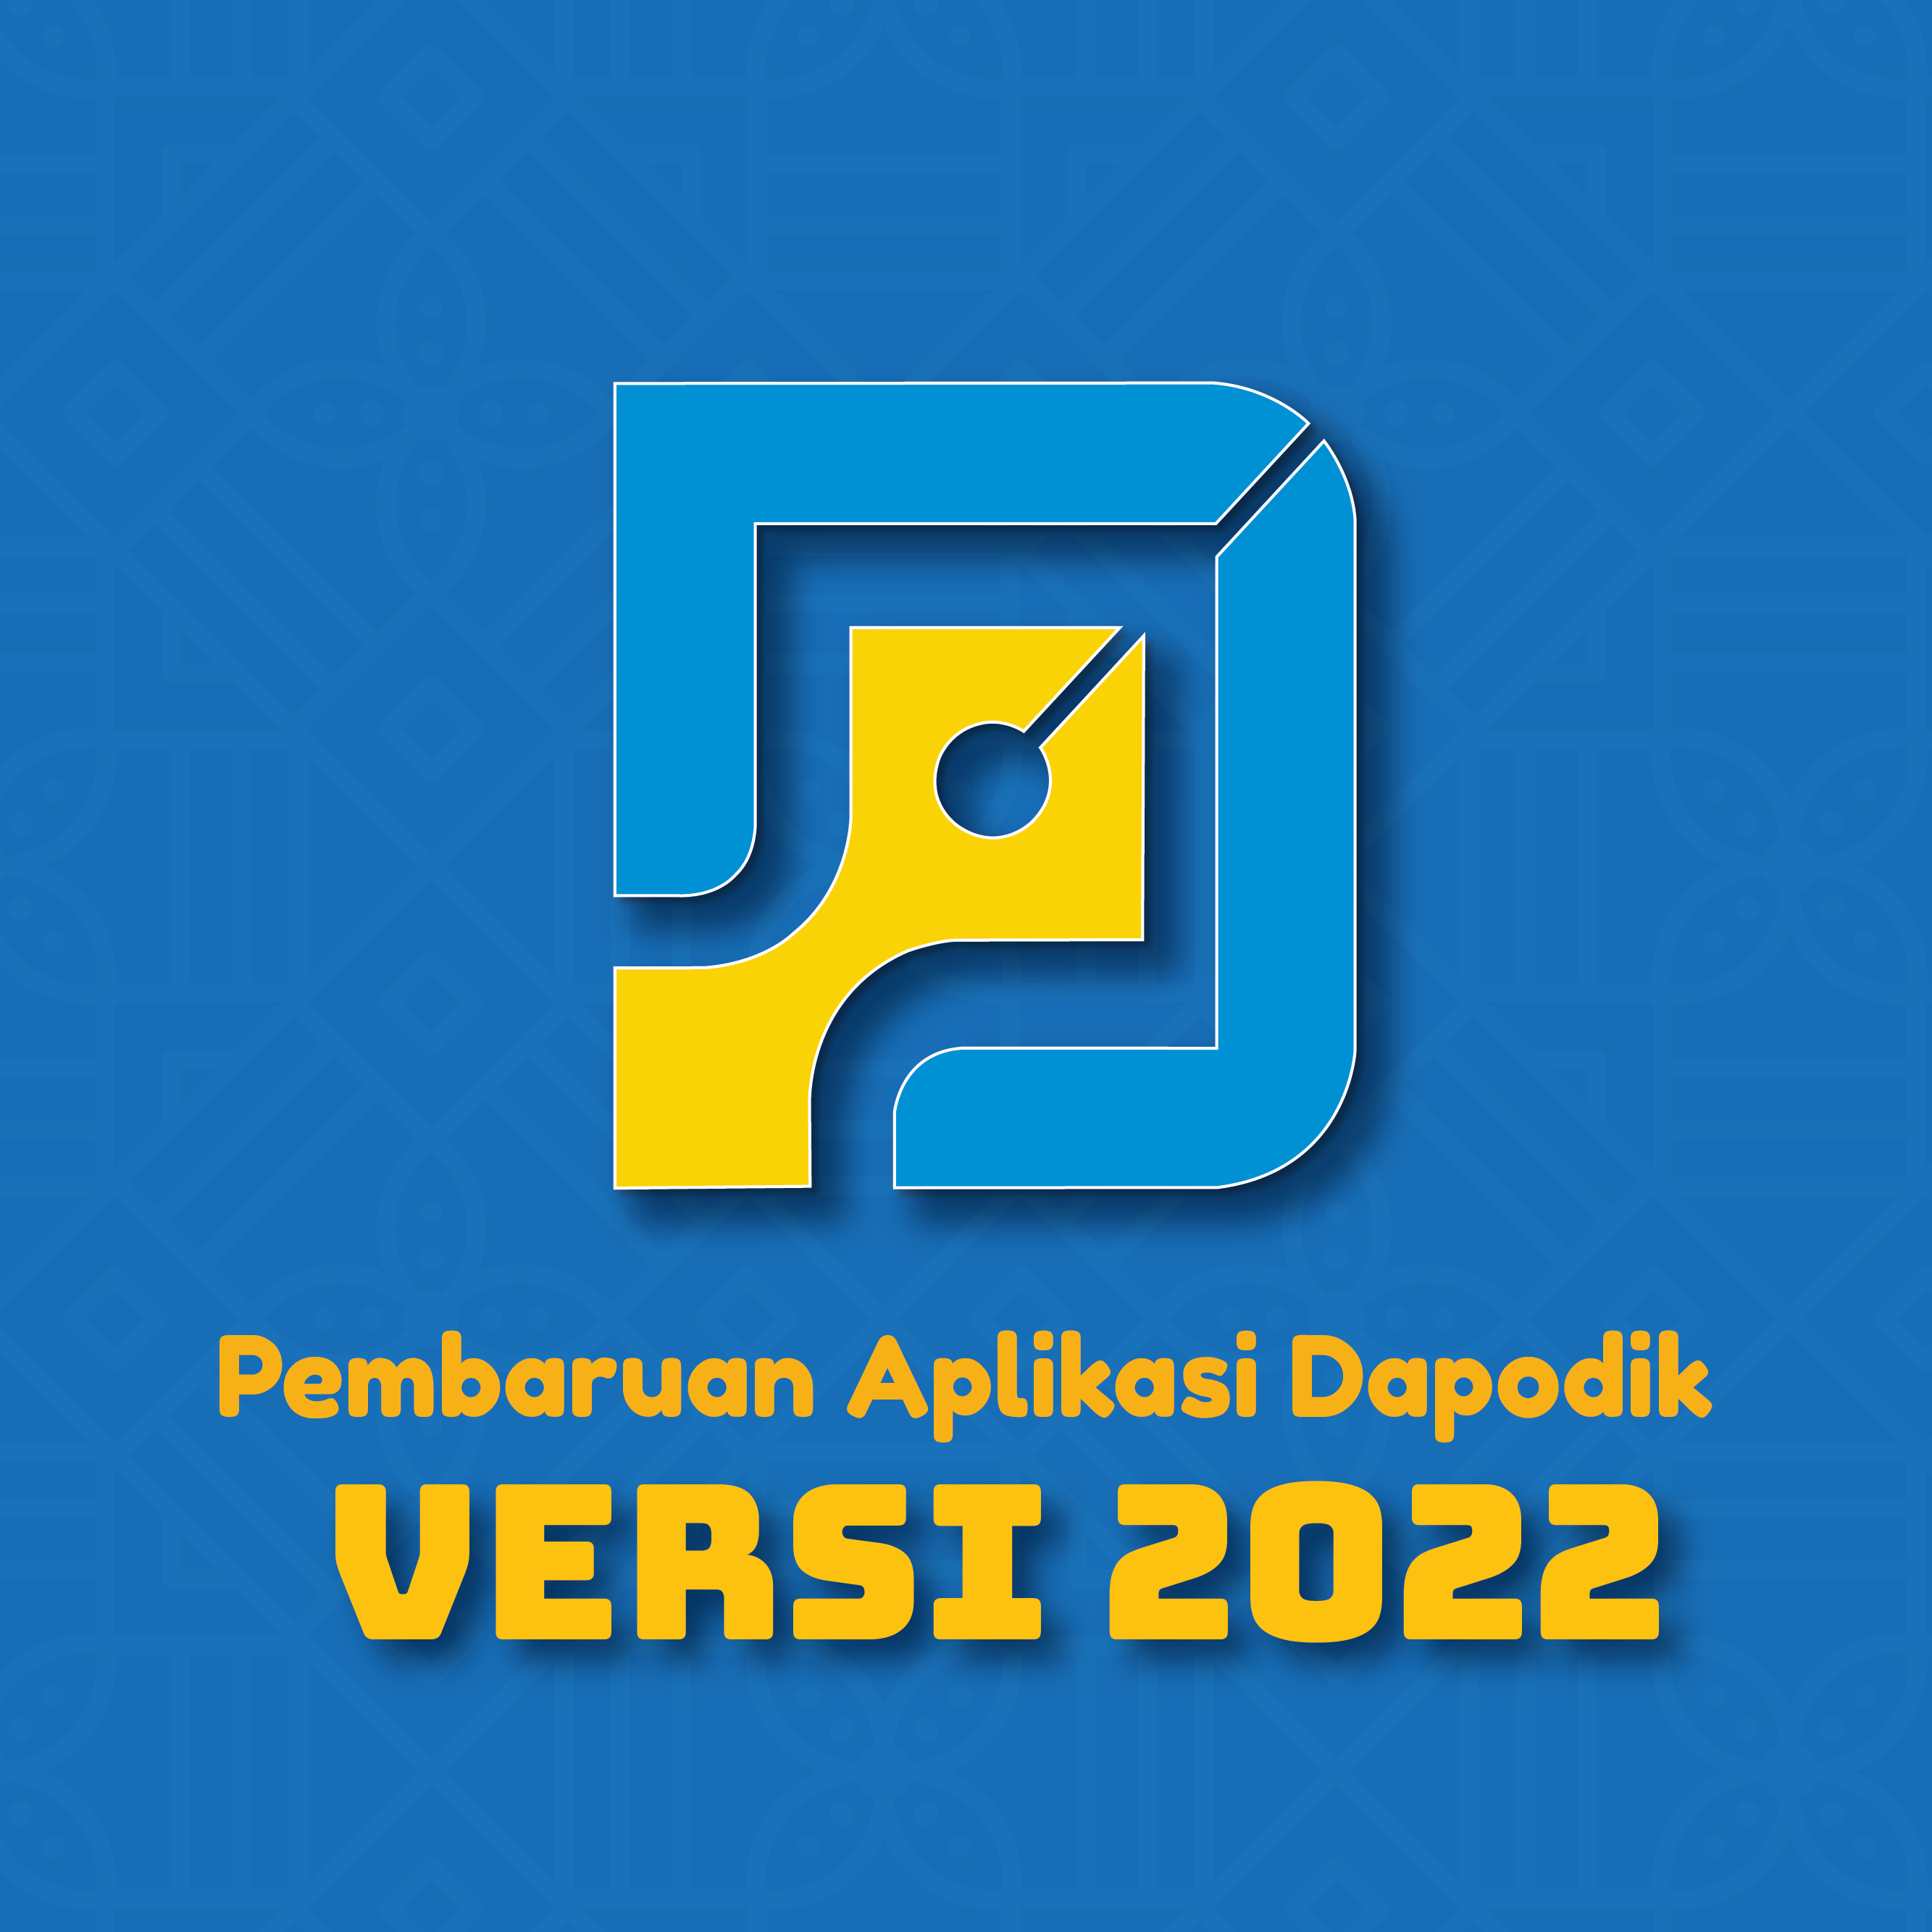 Pembaruan Aplikasi Dapodik Versi 2022.d